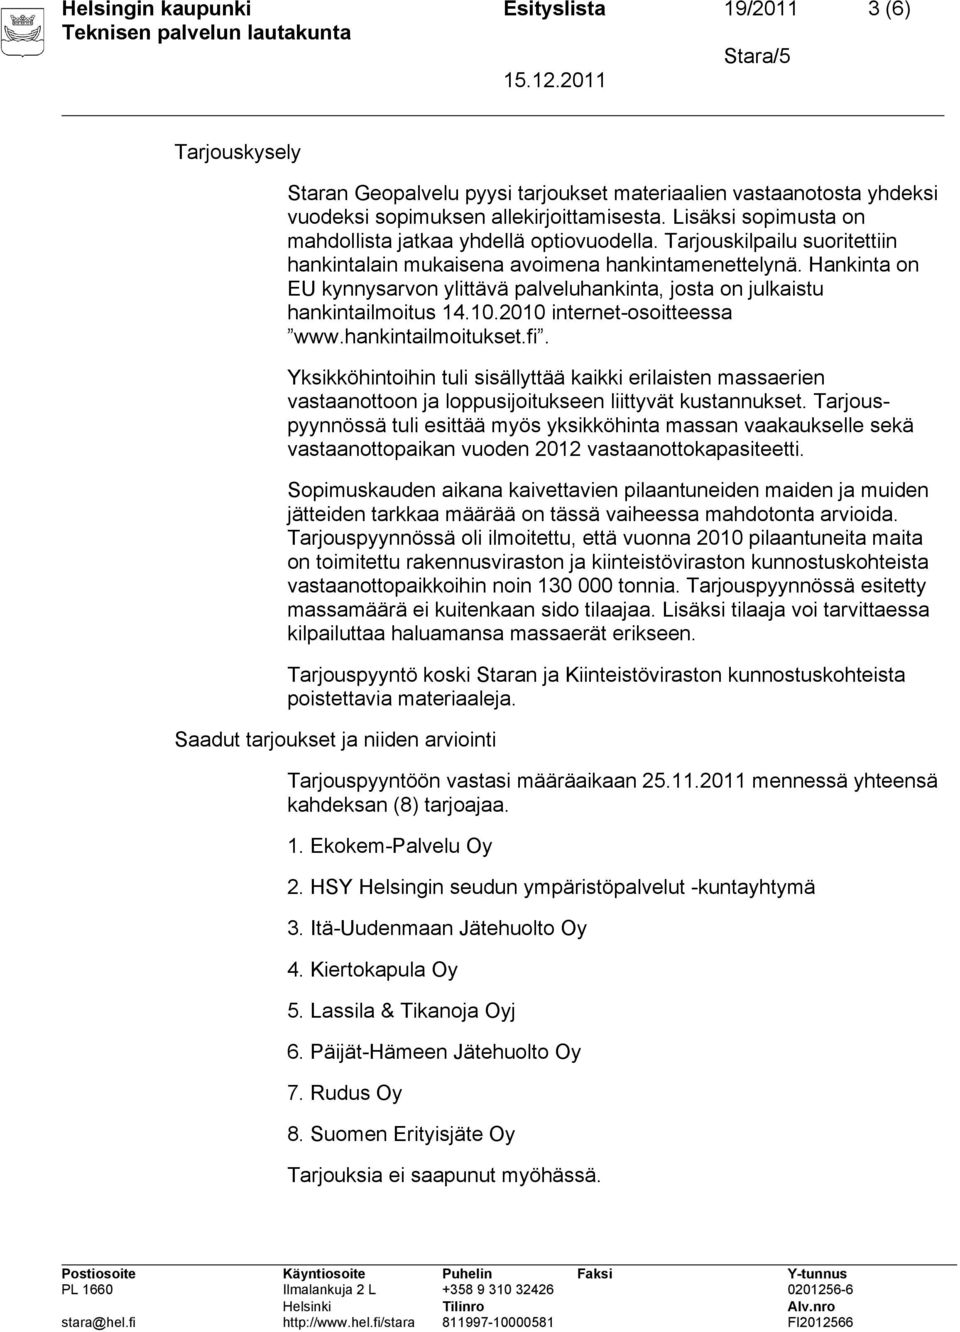 Hankinta on EU kynnysarvon ylittävä palveluhankinta, josta on julkaistu hankintailmoitus 14.10.2010 internet-osoitteessa www.hankintailmoitukset.fi.